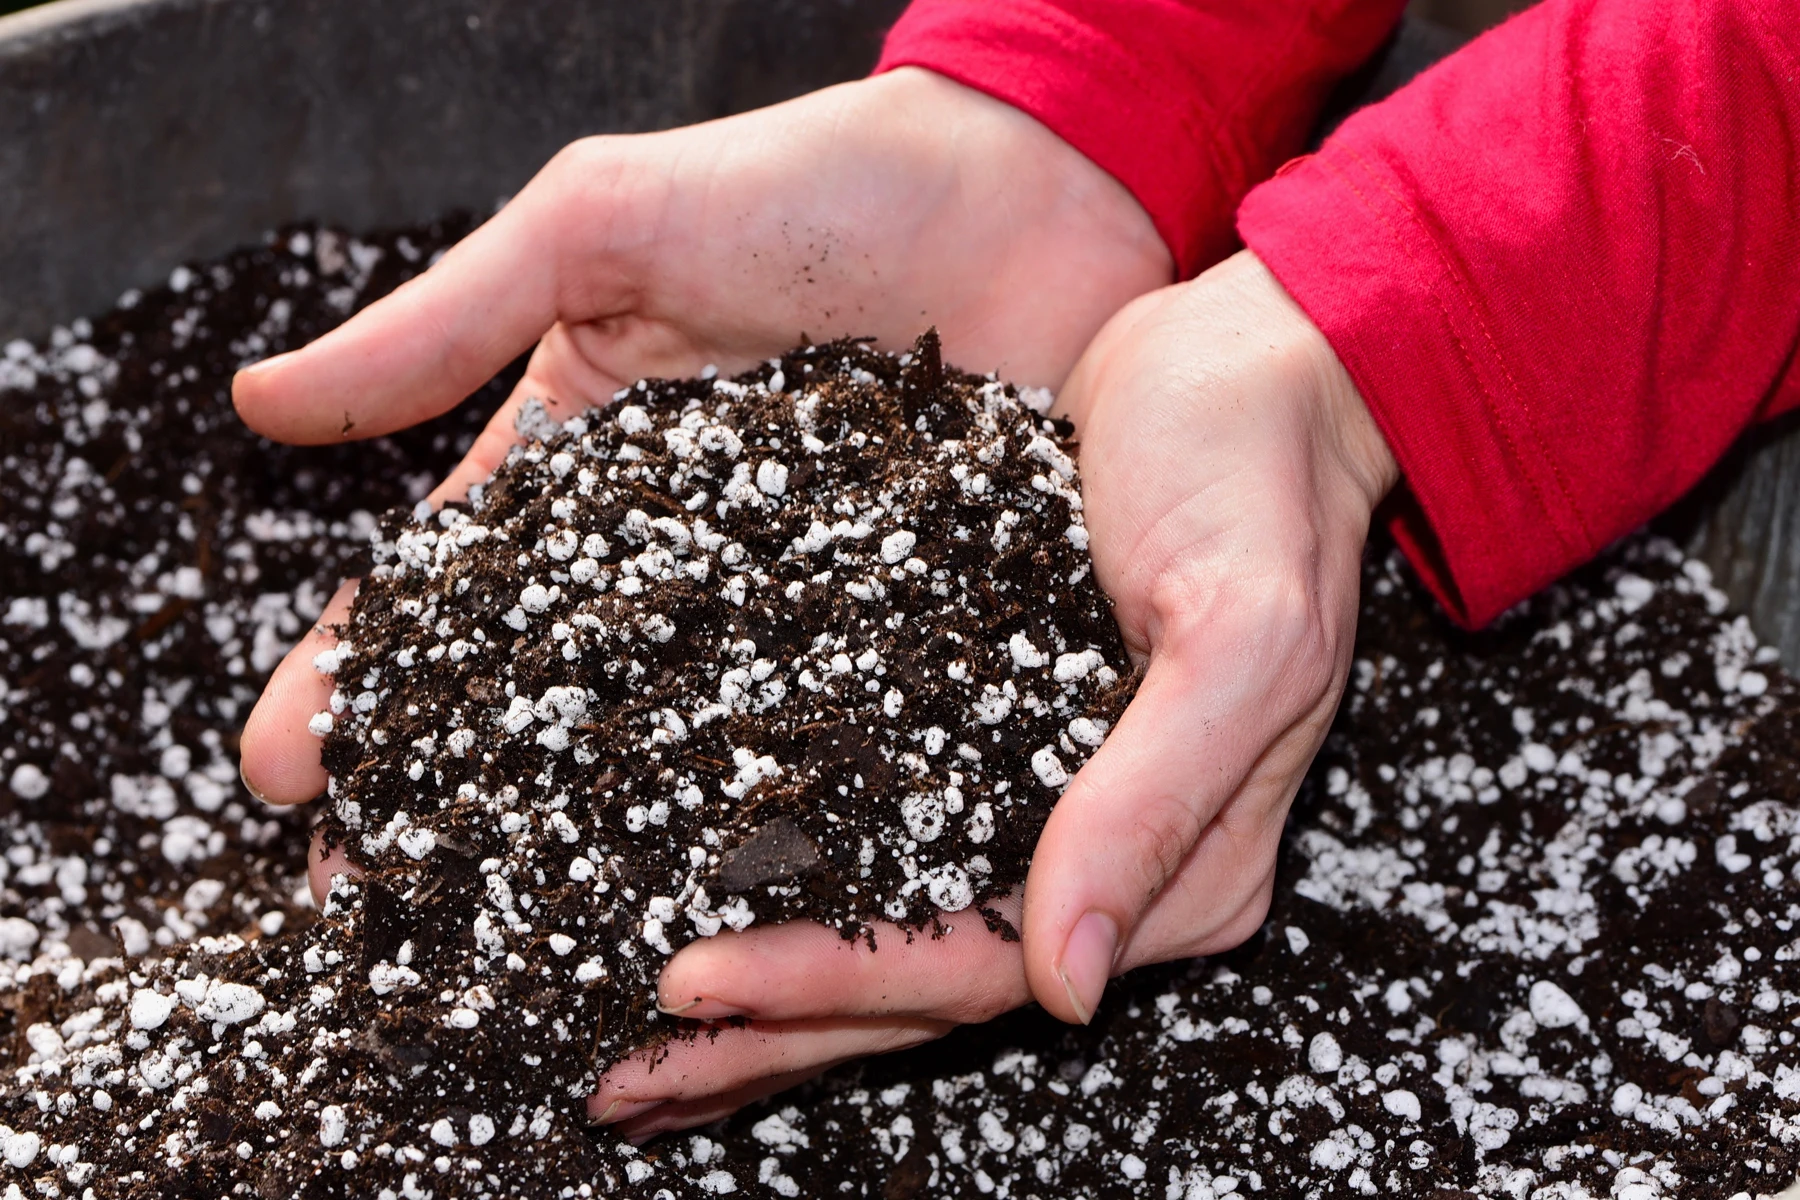 3-6 mm Expanded Perlite Horticultural Soil Additive Potting Soil for Plants